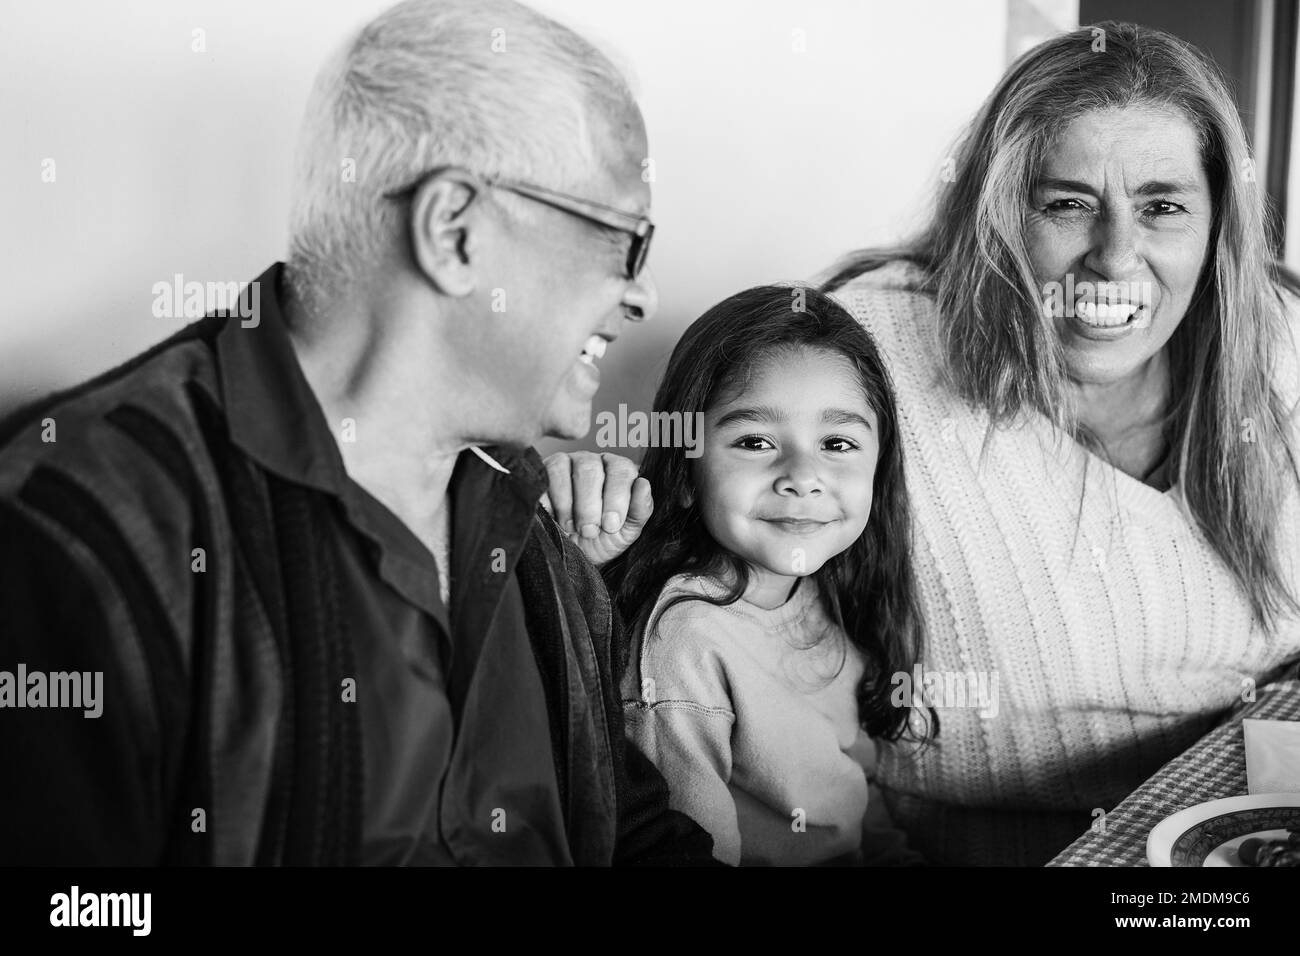 Glückliche lateinische Großeltern, die Spaß beim Essen mit ihrer Enkelin auf der Terrasse haben - Fokus auf Mädchengesicht - Schwarz-Weiß-Bearbeitung Stockfoto